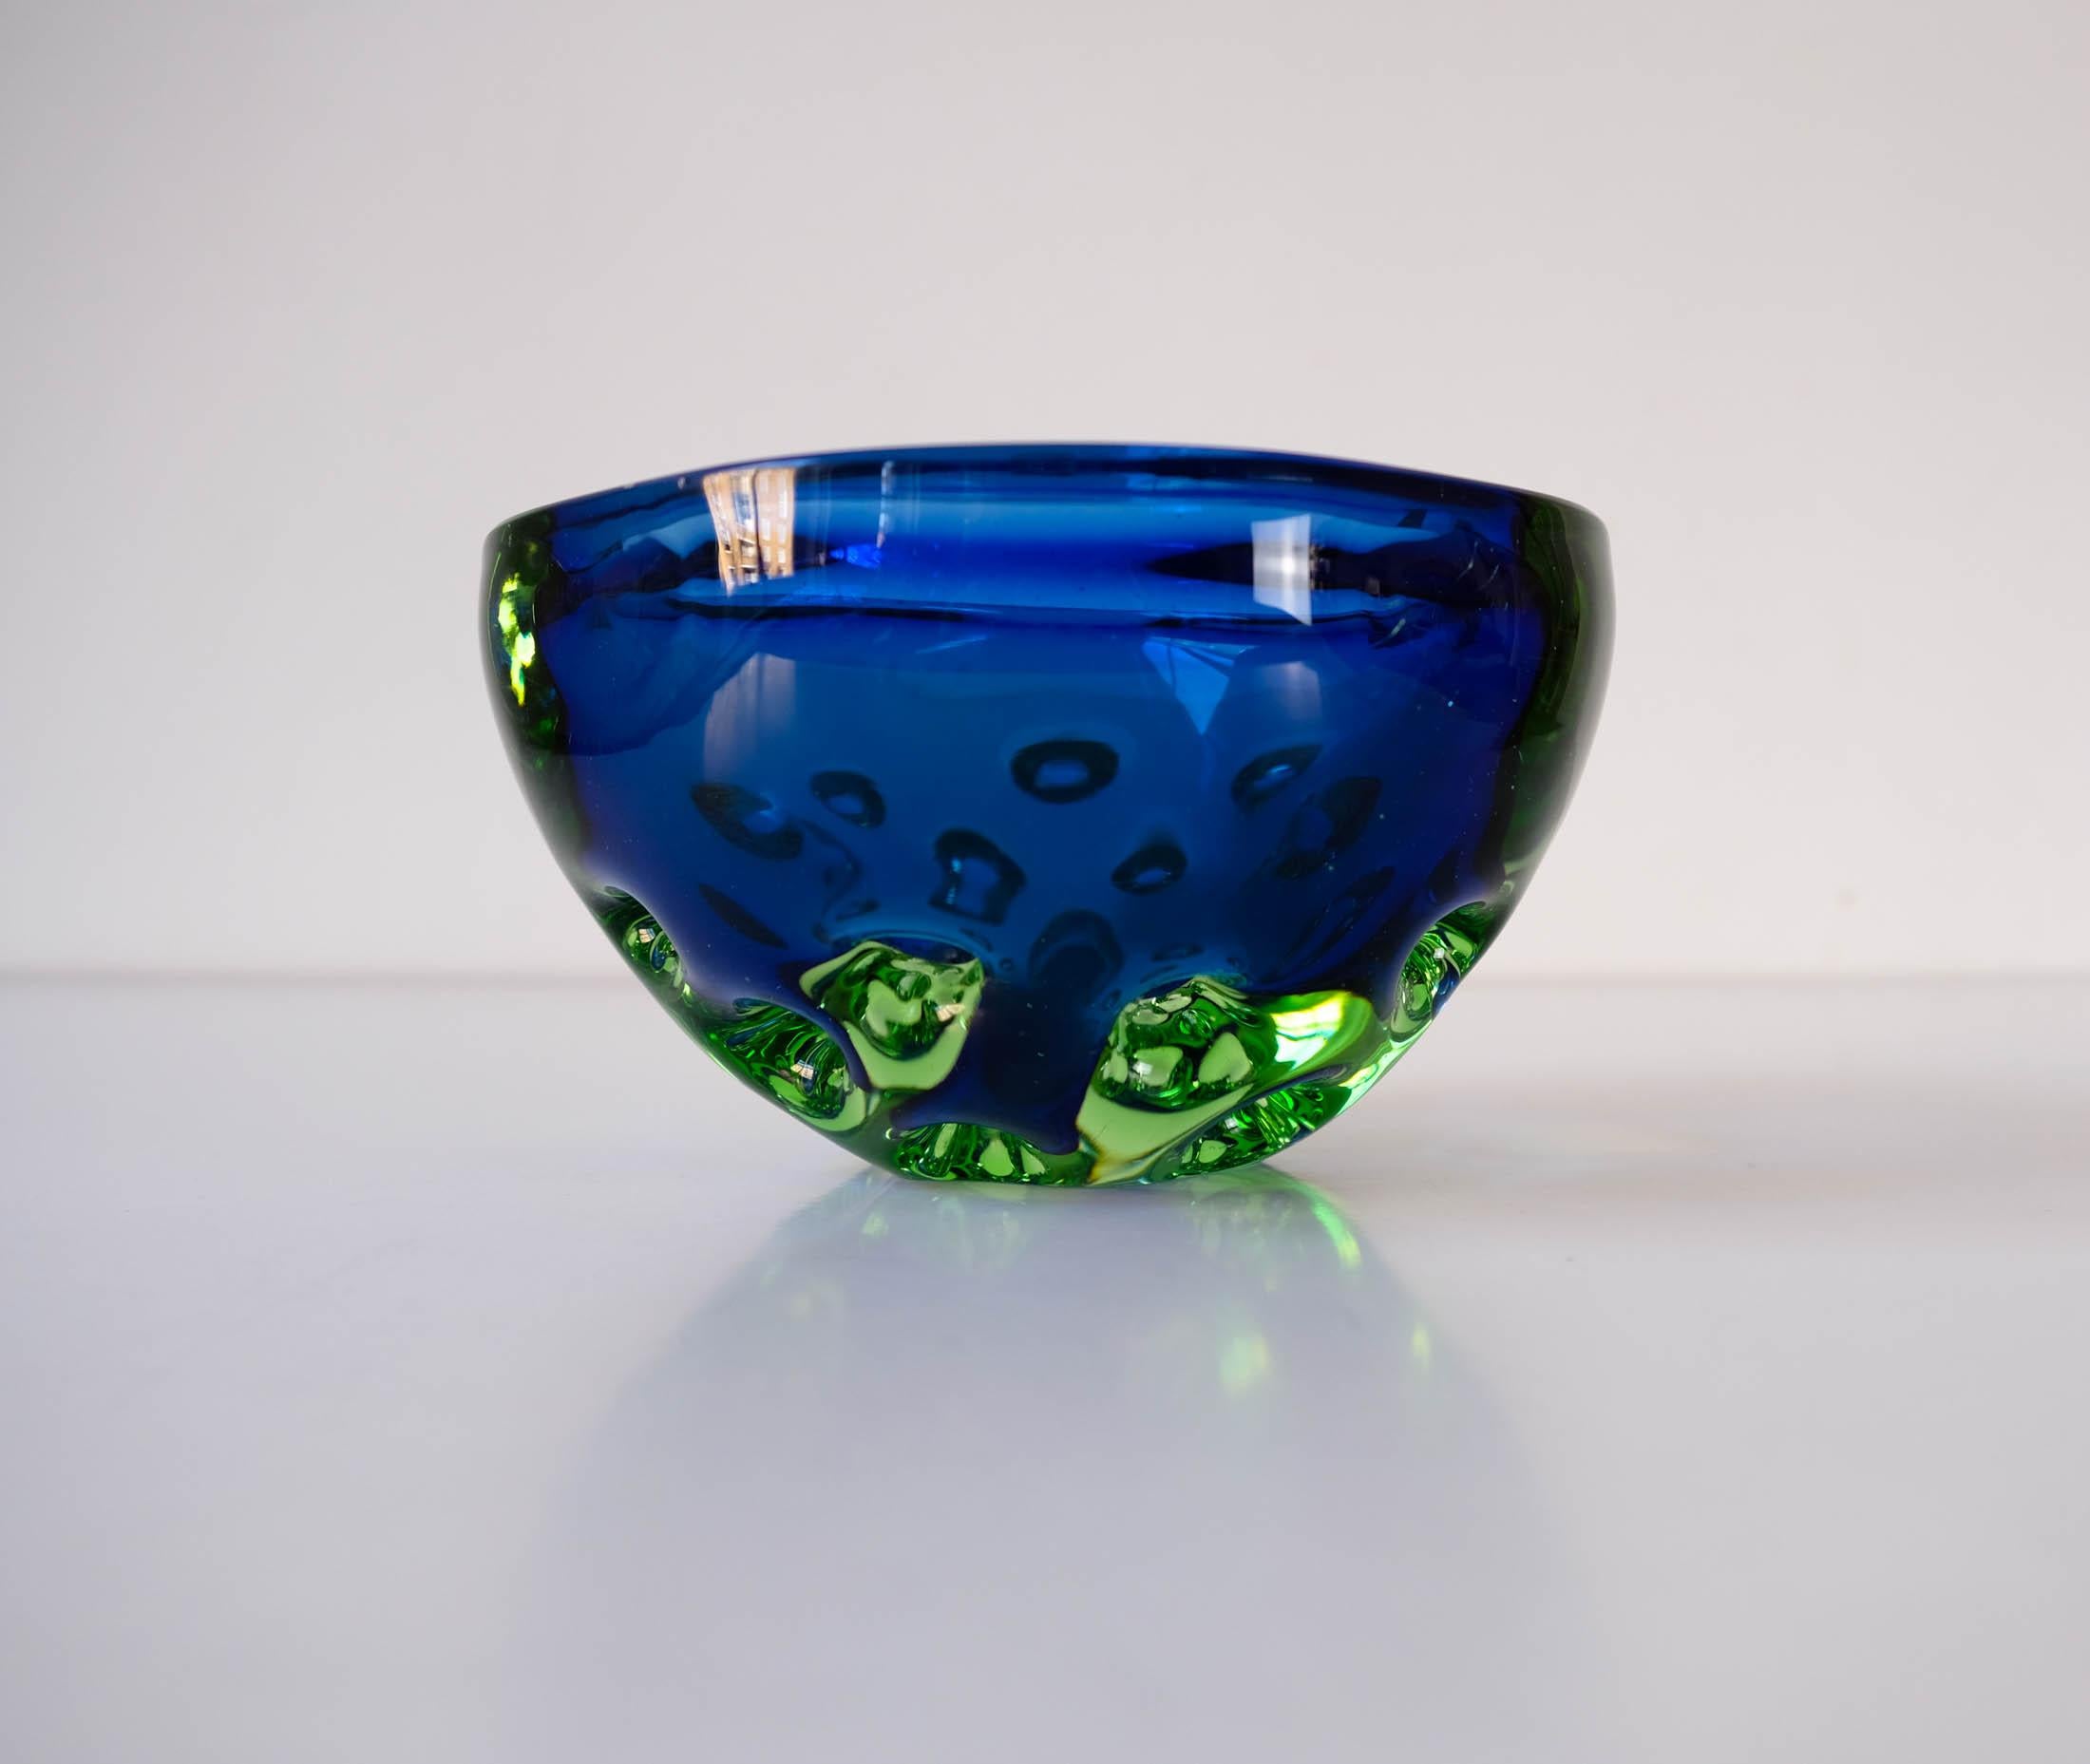 Zu verkaufen eine Mid-Century Sommerso blau & grün Murano genoppt Geode vide poche/catch-all Schale von Galliano Ferro, Italien ca. 1960er Jahre.

Diese wunderschöne Schale befindet sich in einem guten Vintage-Zustand, mit einigen kleinen Flecken